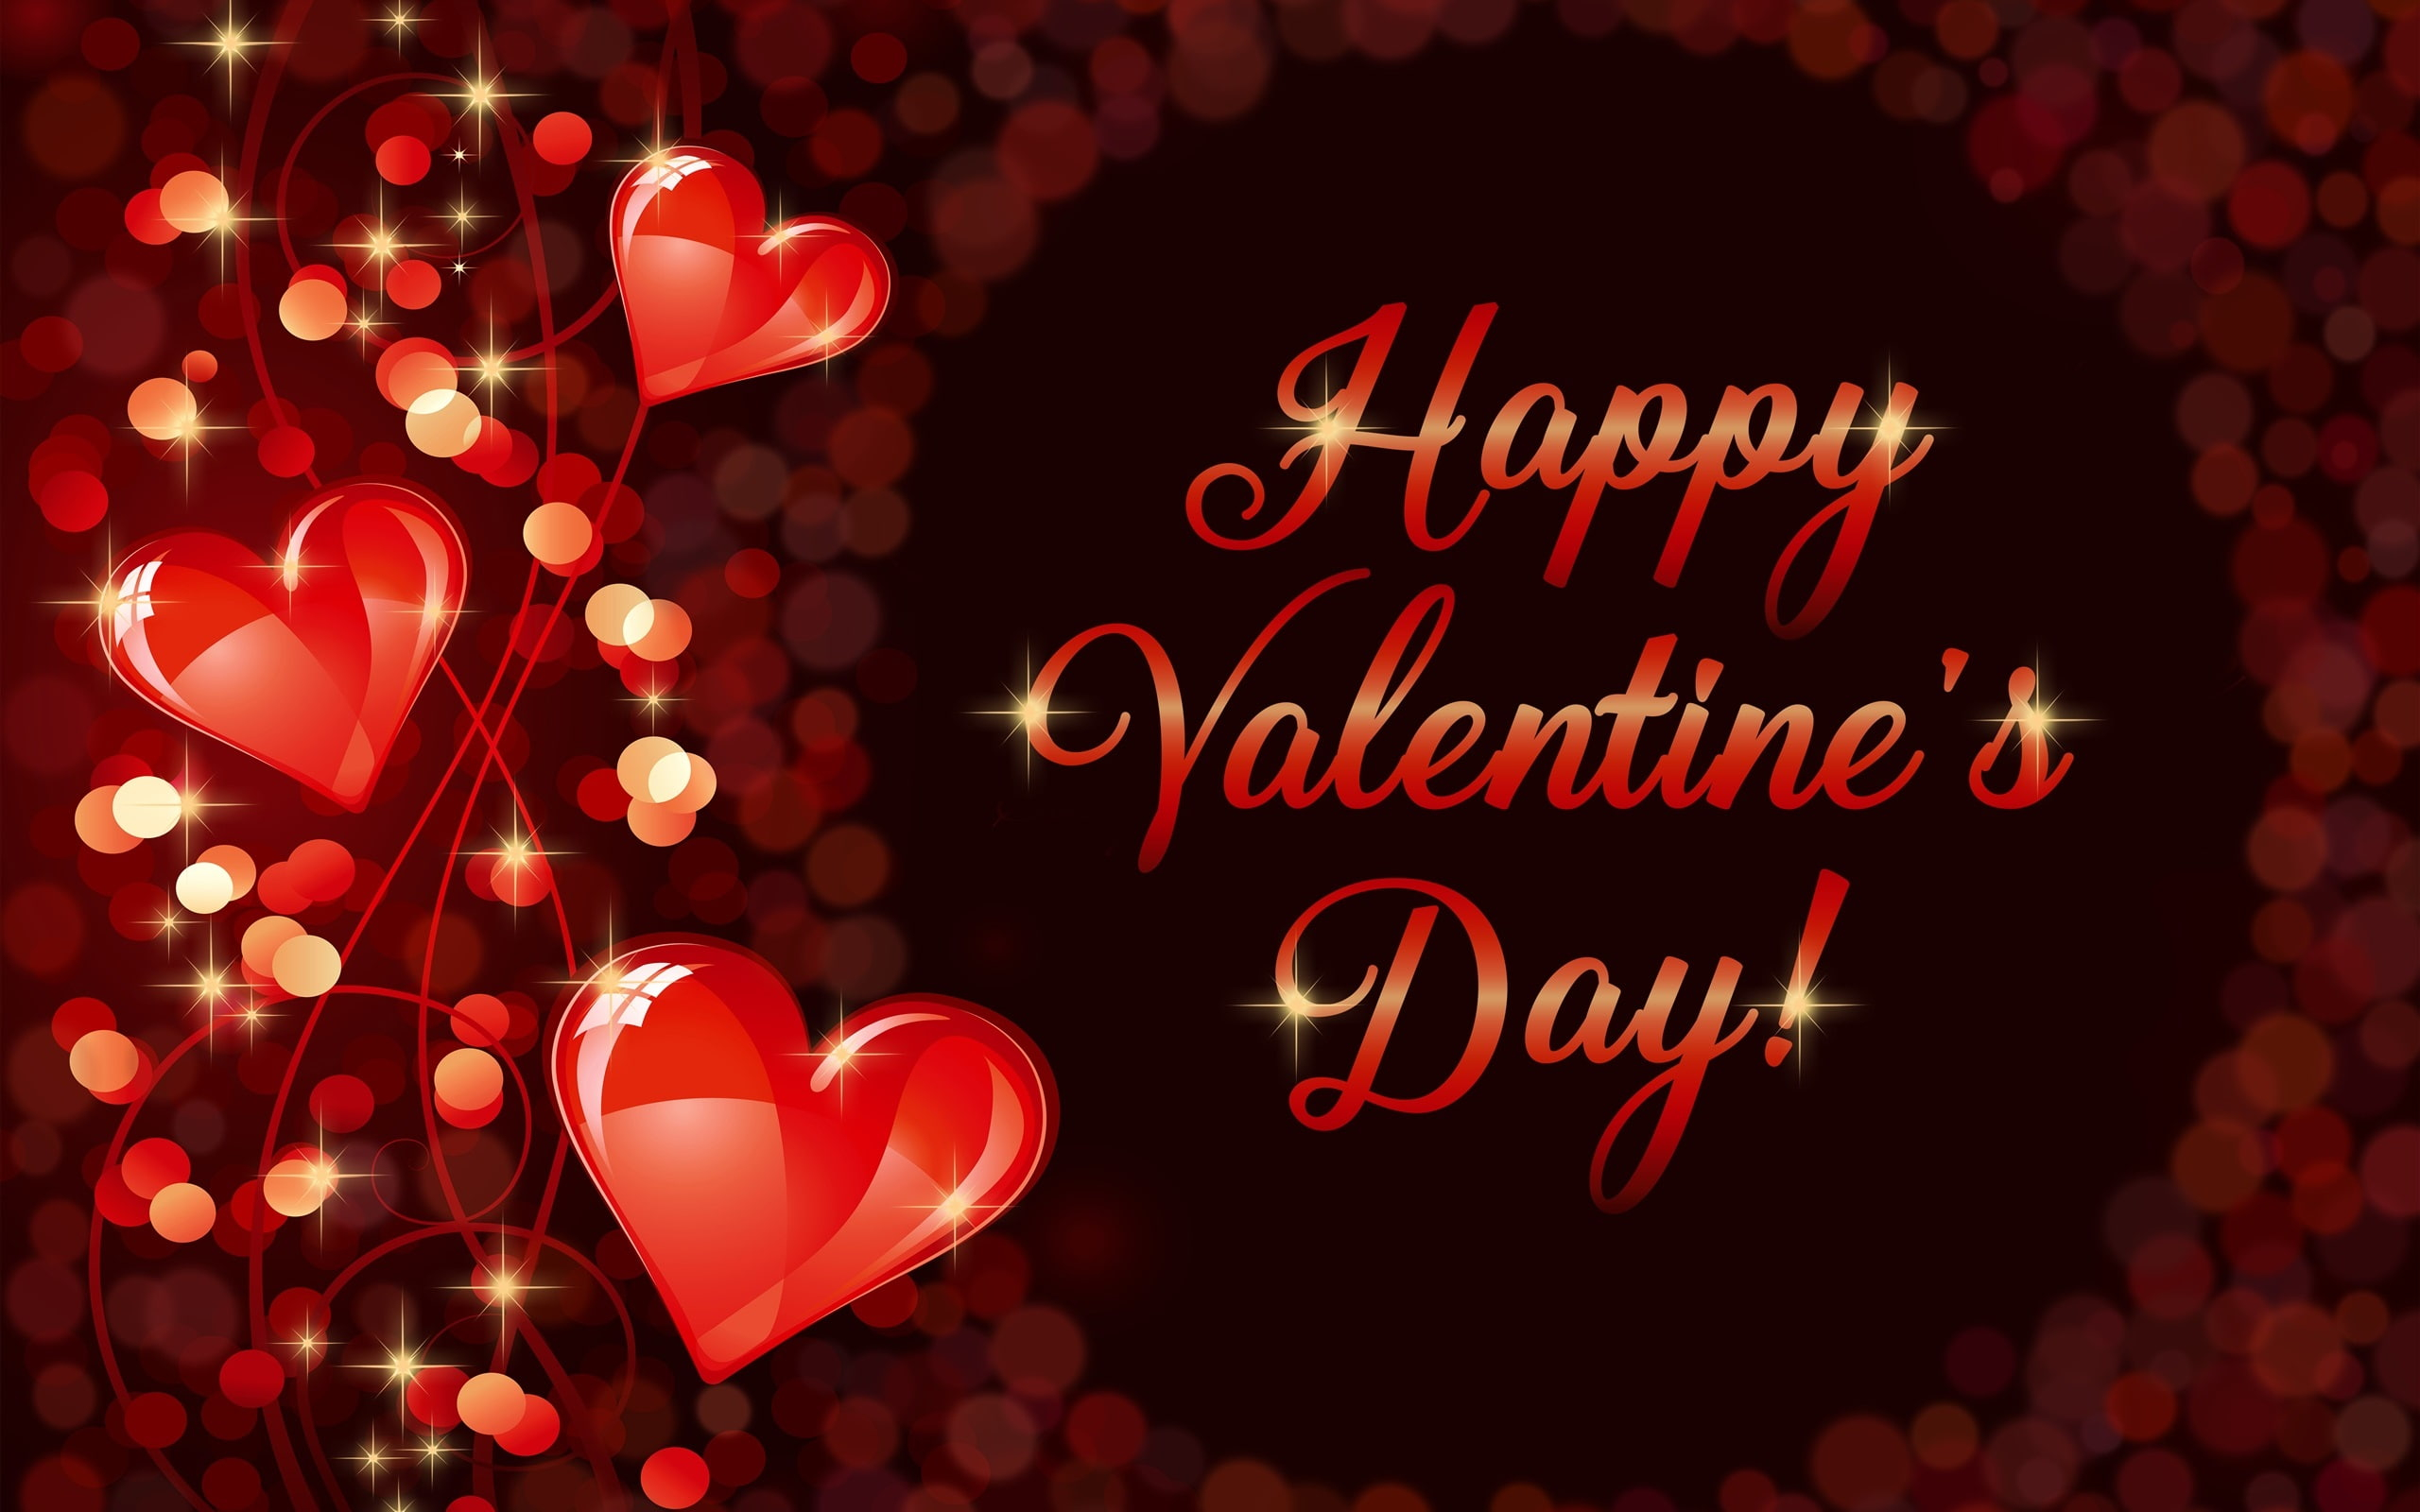 Happy Valentine’s Day, romantic, love, hearts wallpaper